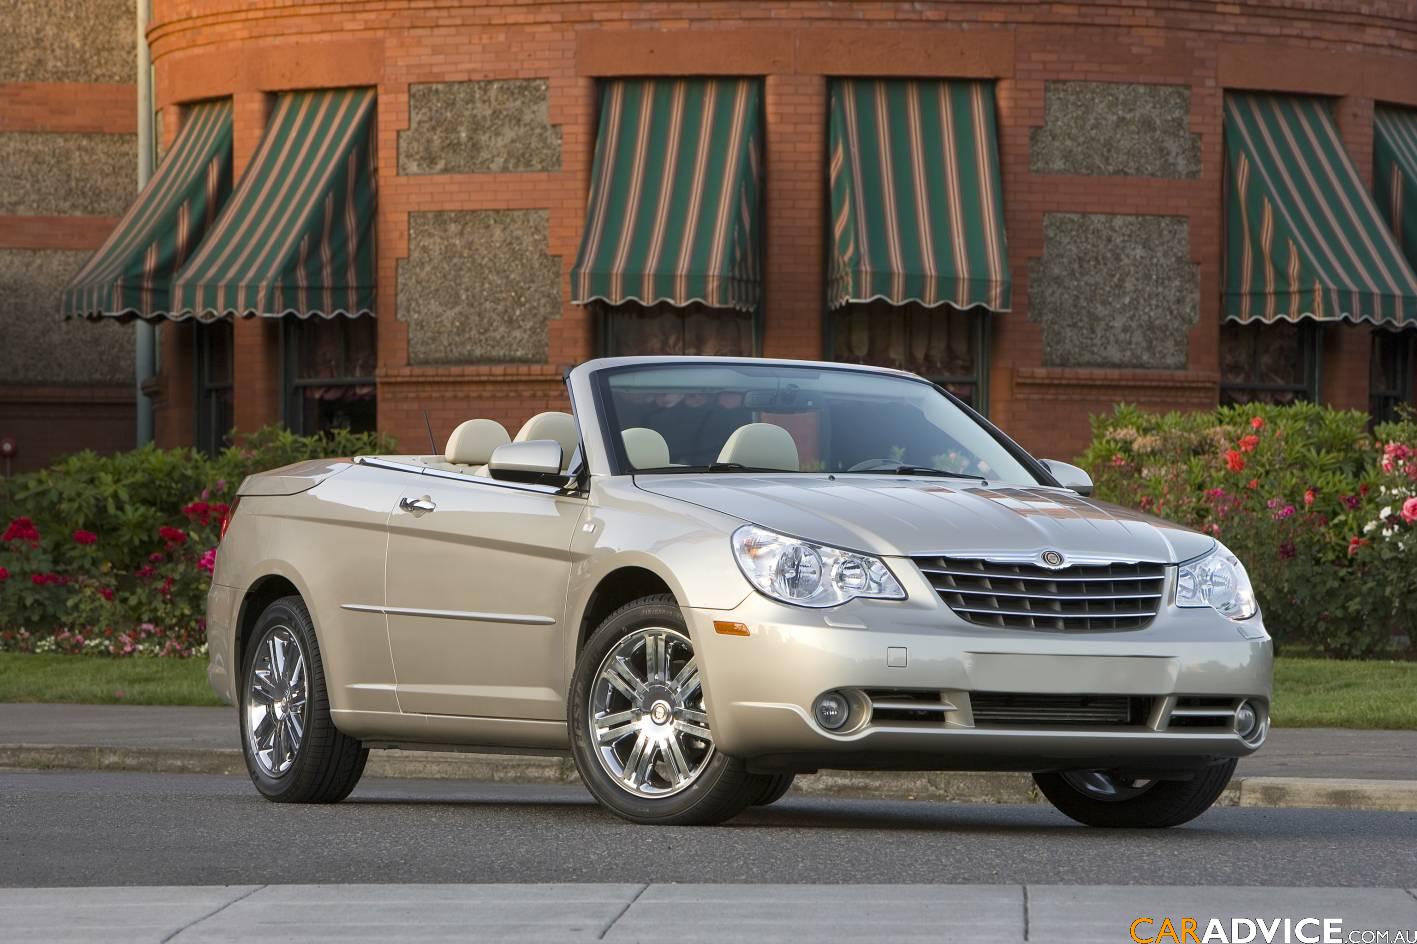 Chrysler Cabrio Photos, Reviews, News, Specs, Buy car